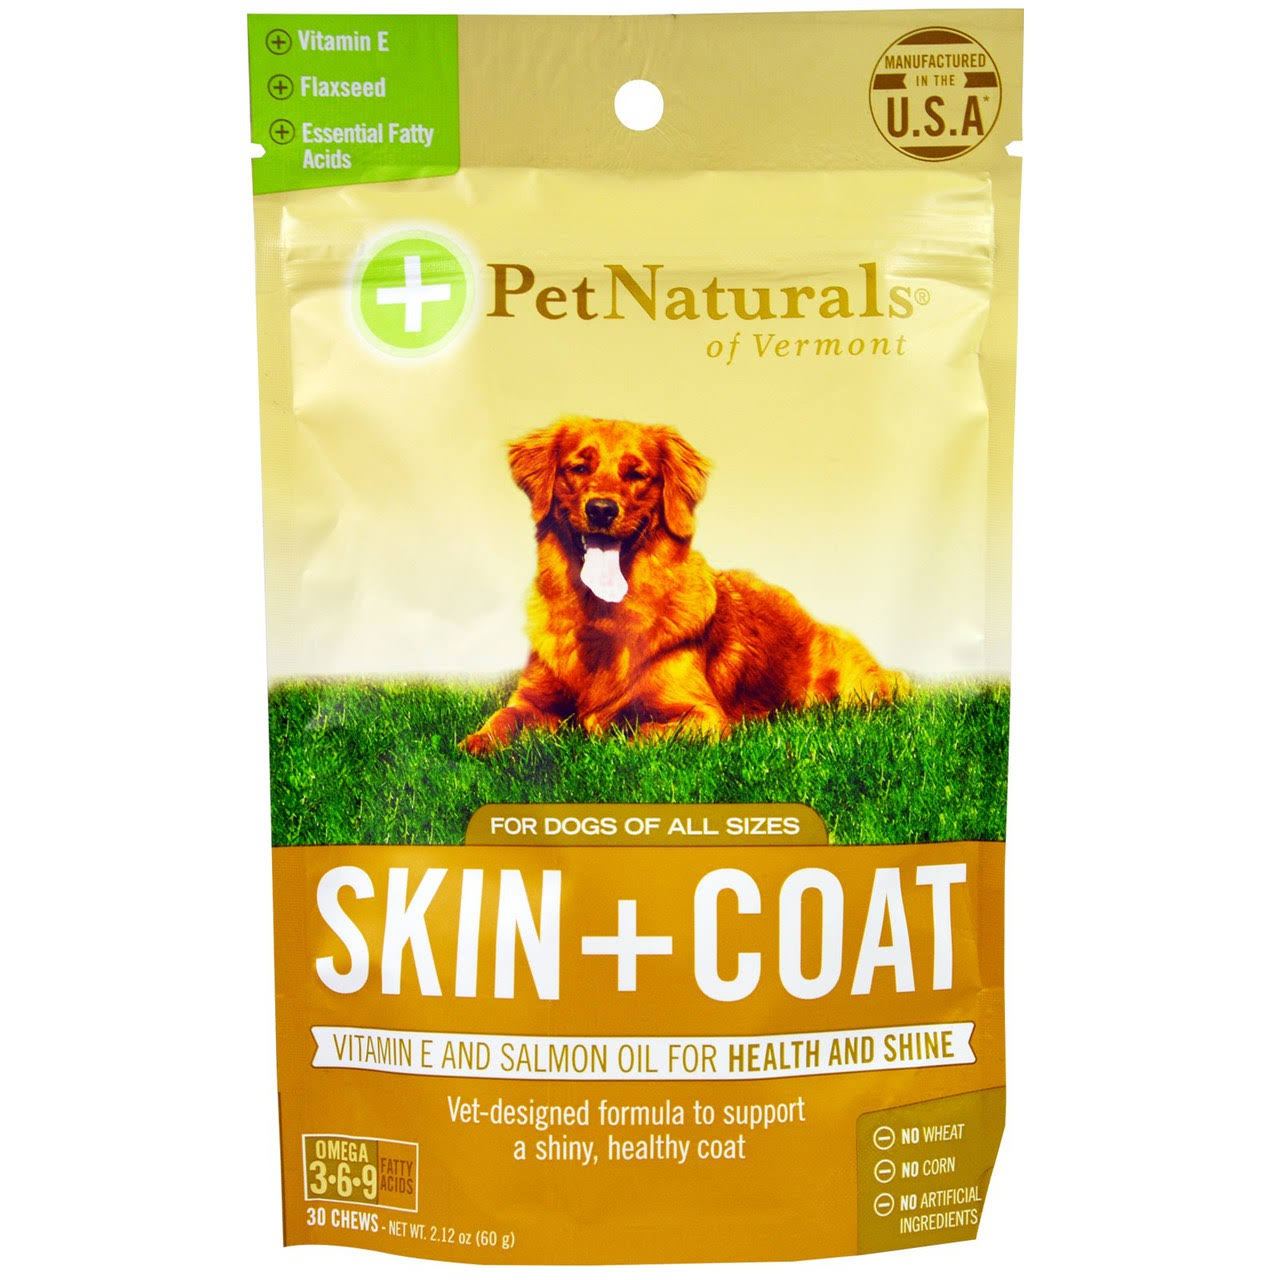 Pet Naturals Of Vermont Skin & Coat Supplement - 30 Chews, 60g